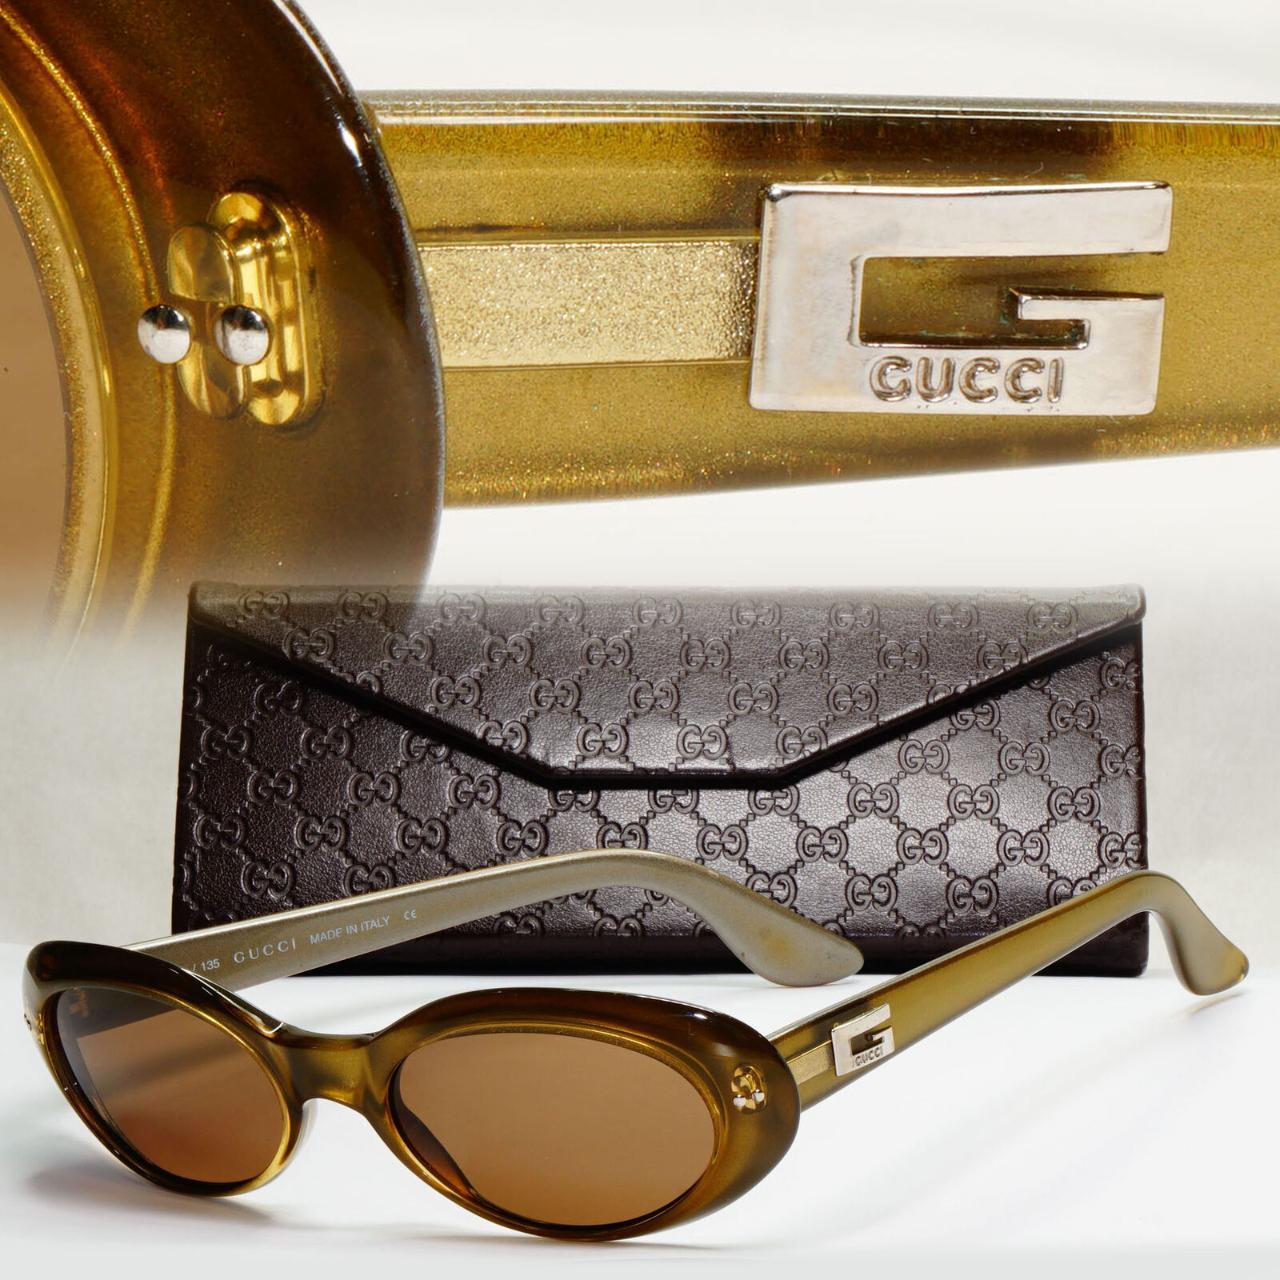 SKU: 166559546449, Gucci Sunglasses 1997 Vintage...